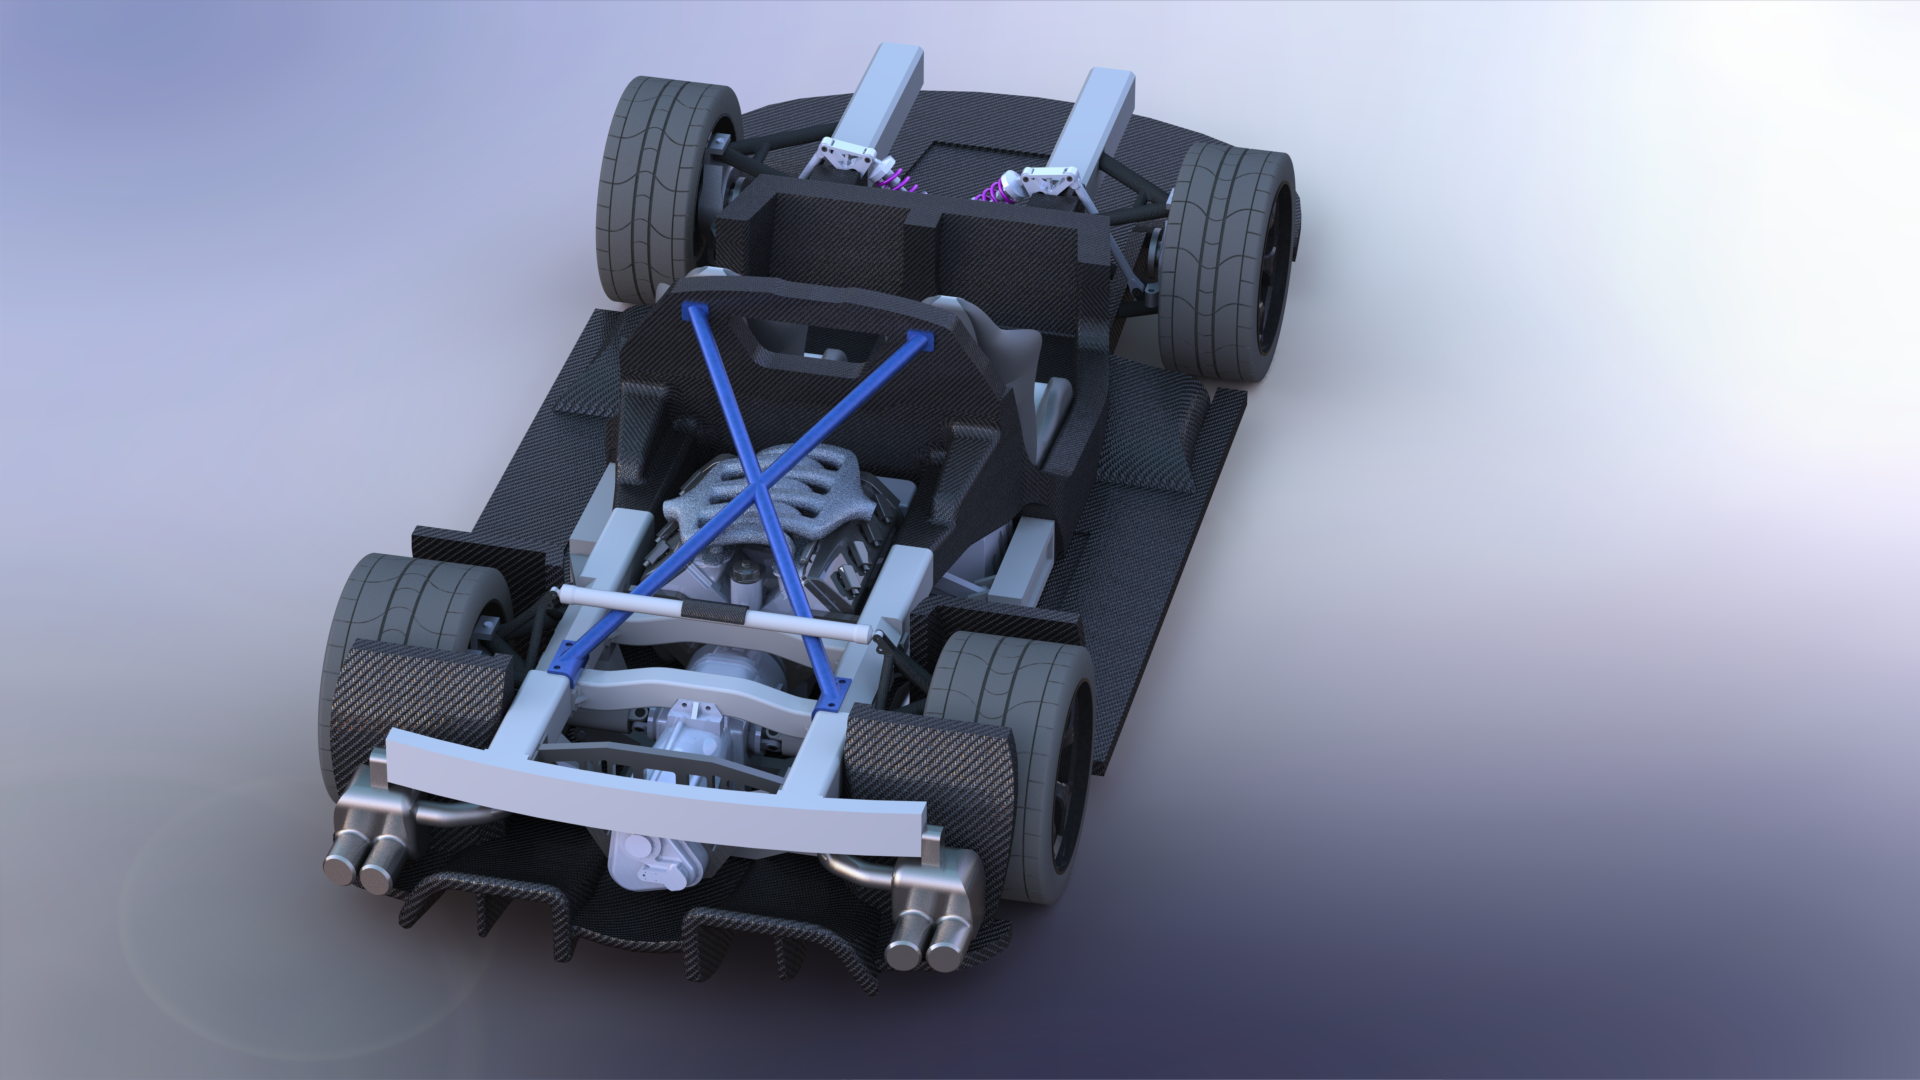 可3D打印的V8超级跑车